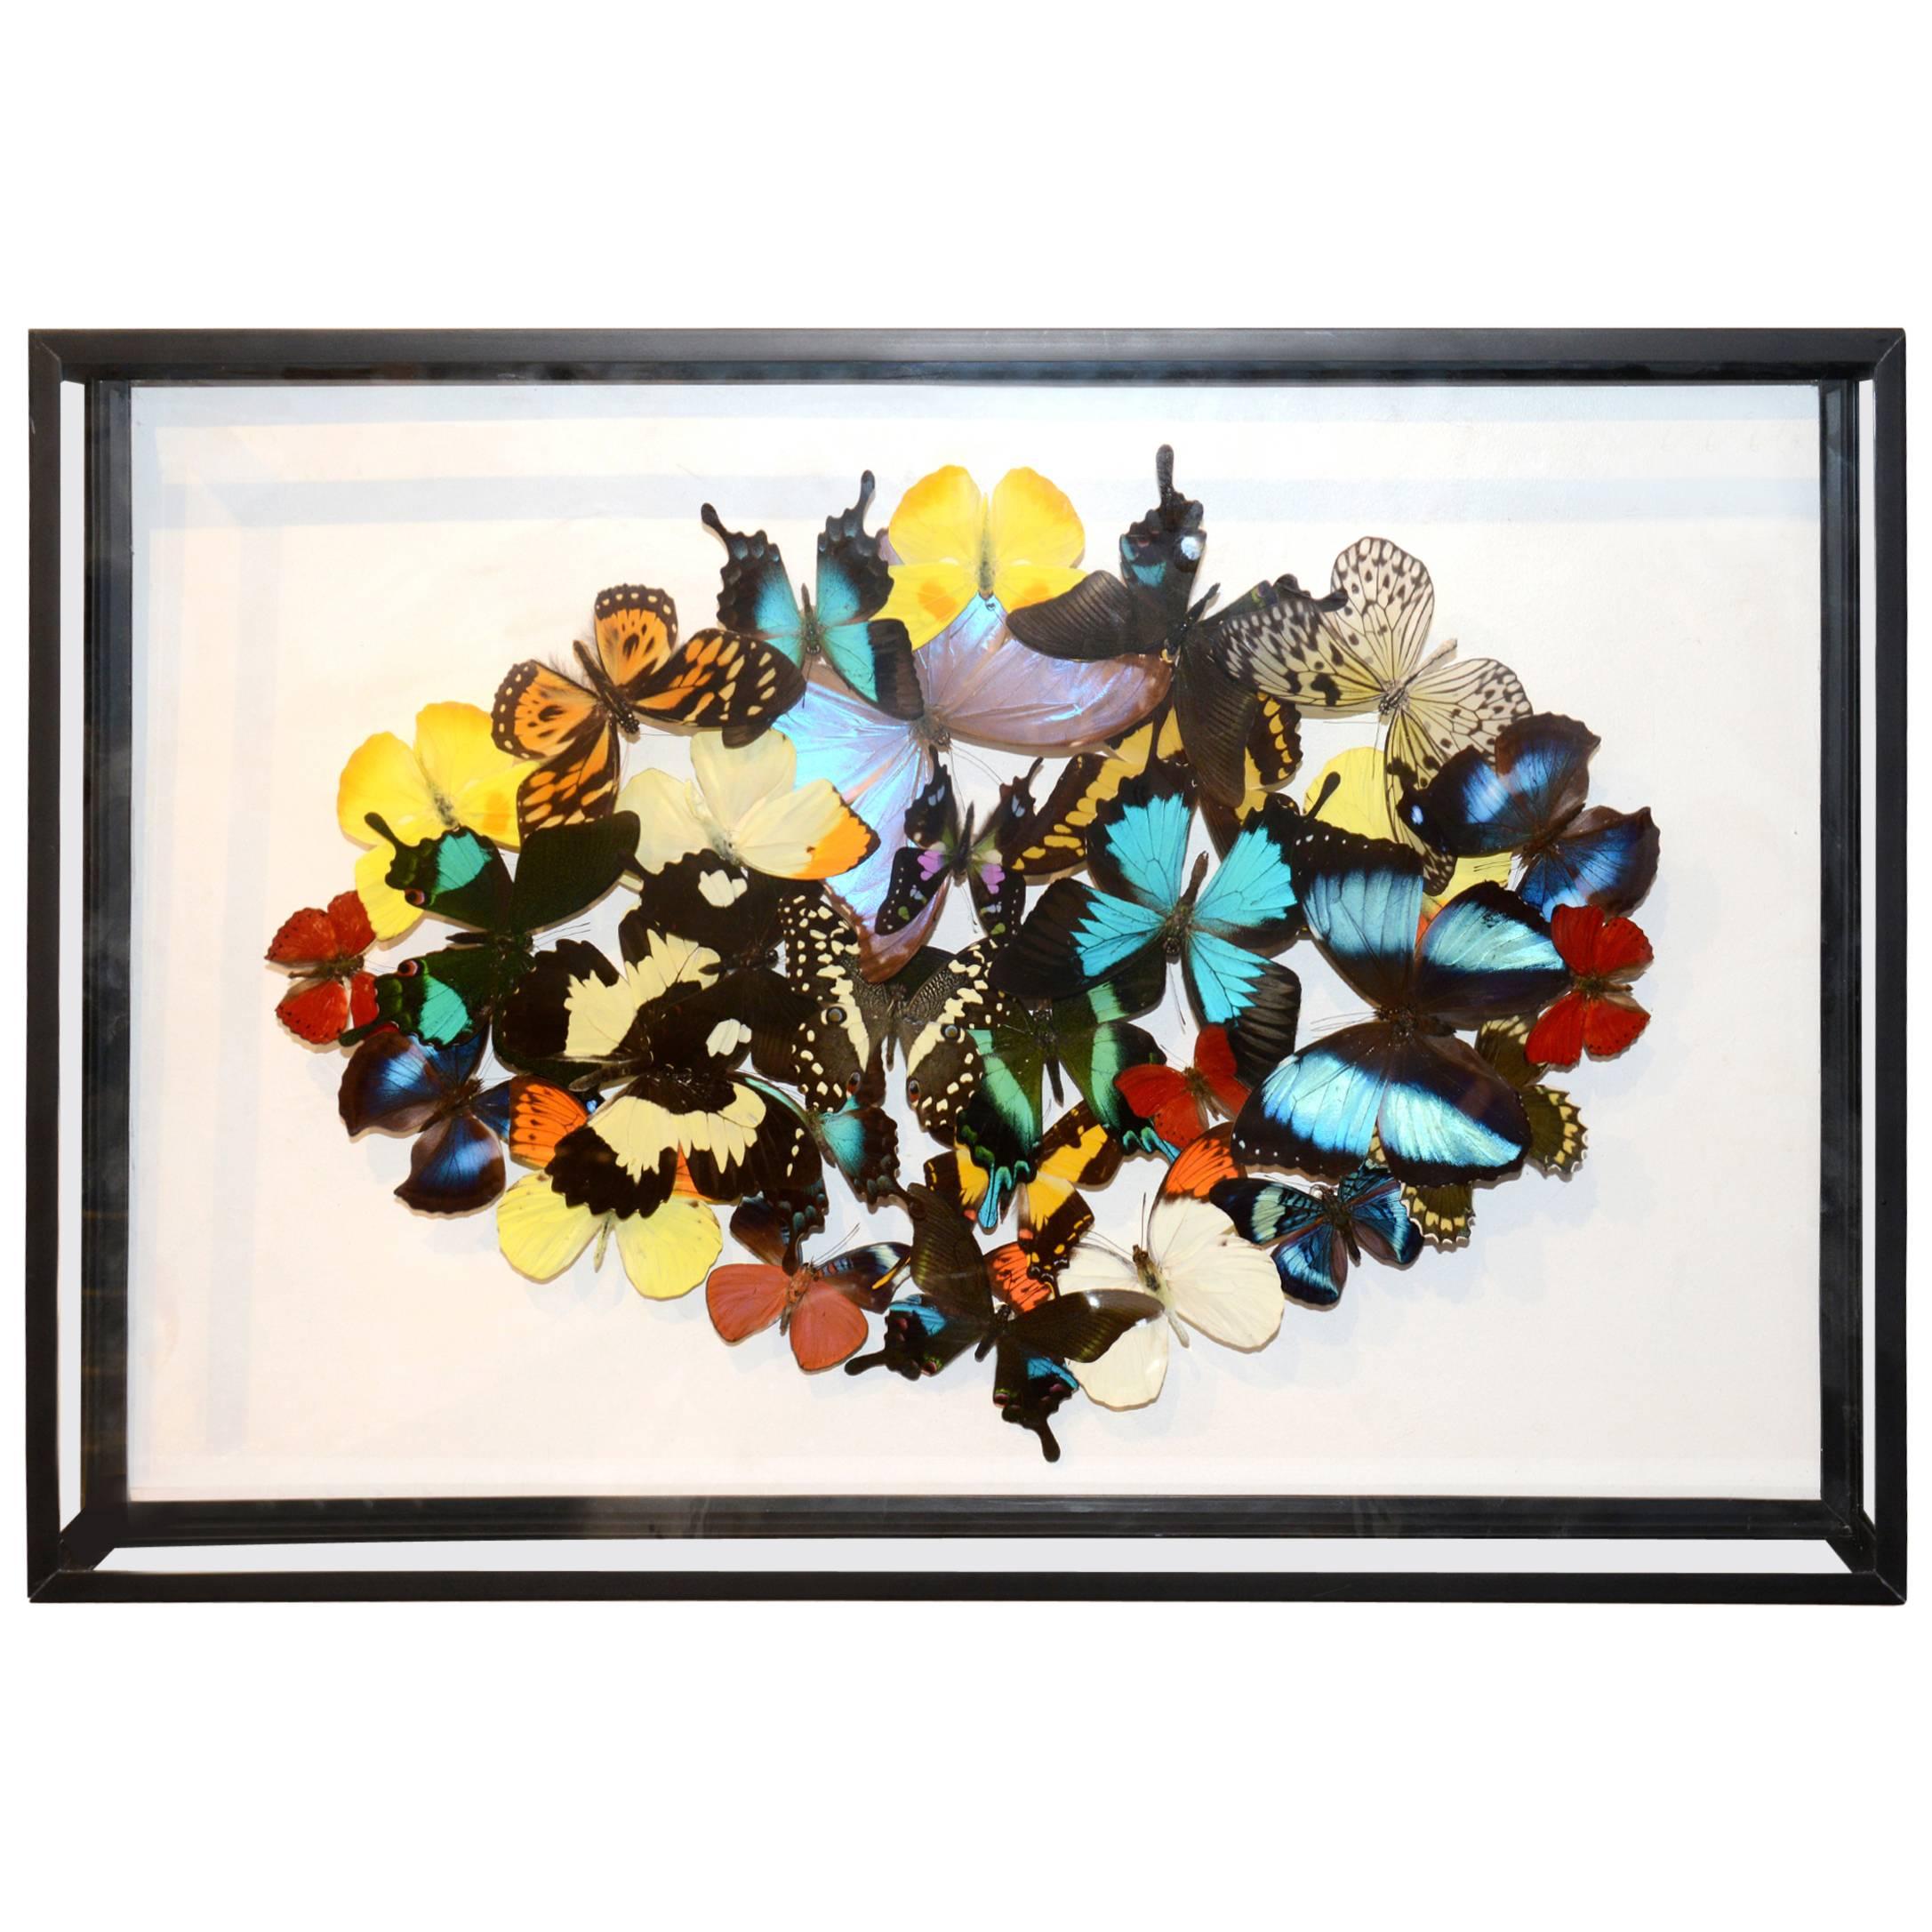 Multicolors Rare Butterflies under Rectangular Glass Frame